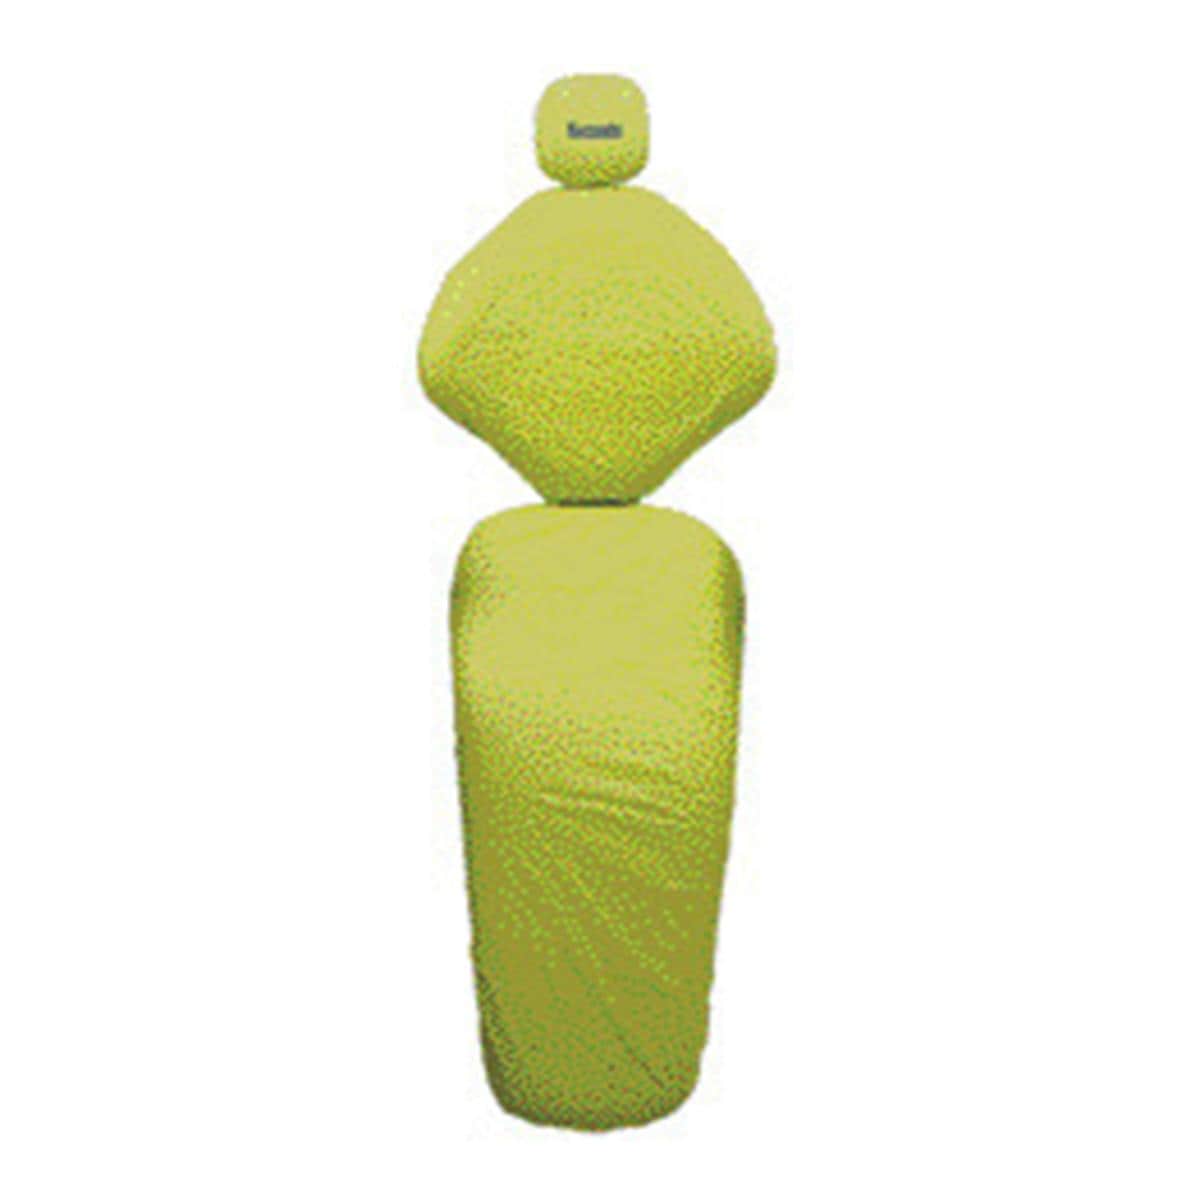 Copri Riunito Euronda Tnt 30g 3pz Color Verde Lime 25 kit